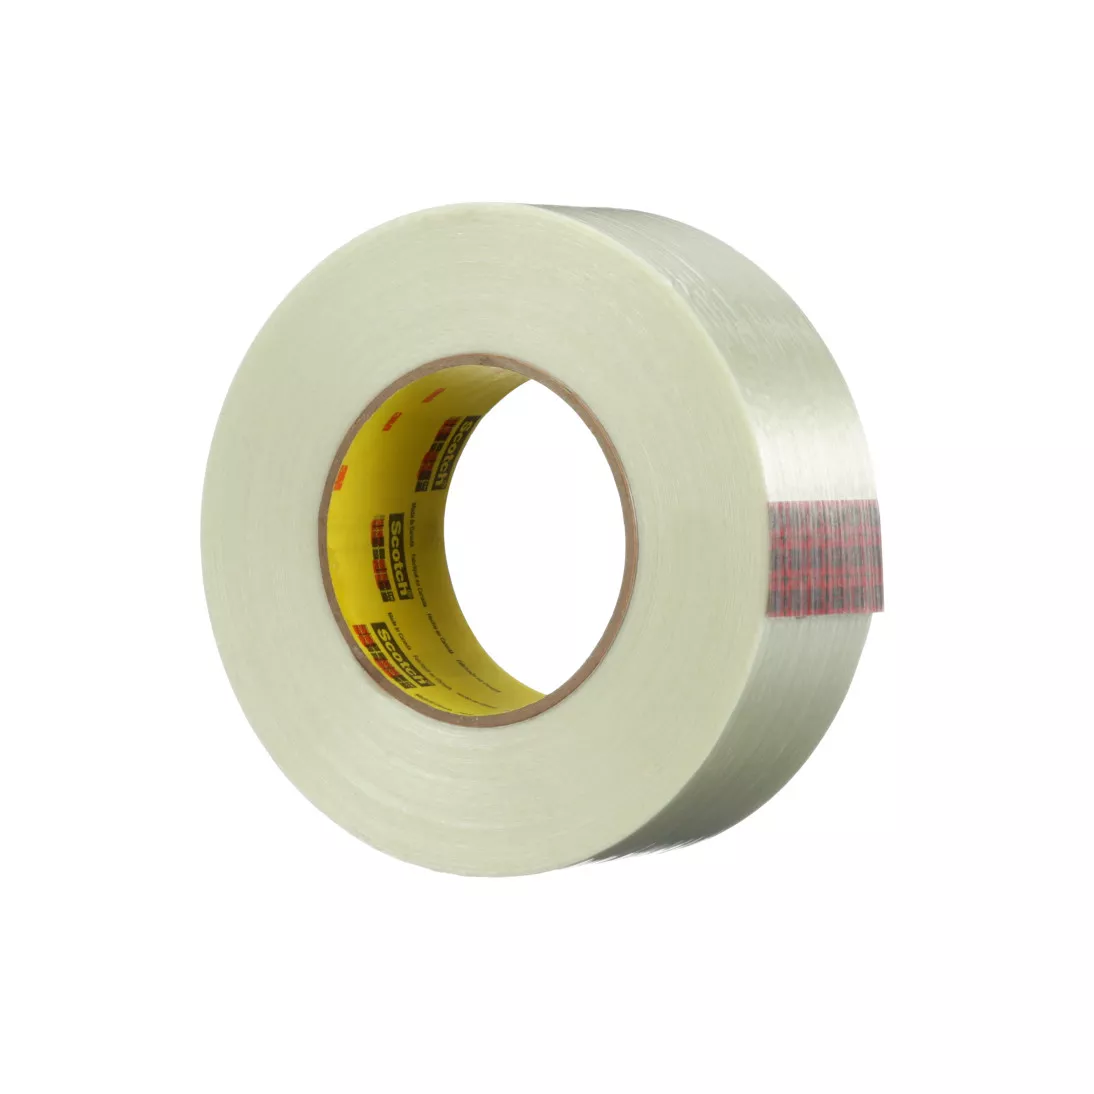 Scotch® High Strength Filament Tape 890RCT, Clear, 48 mm x 500 m, 8 mil,
1 roll per case